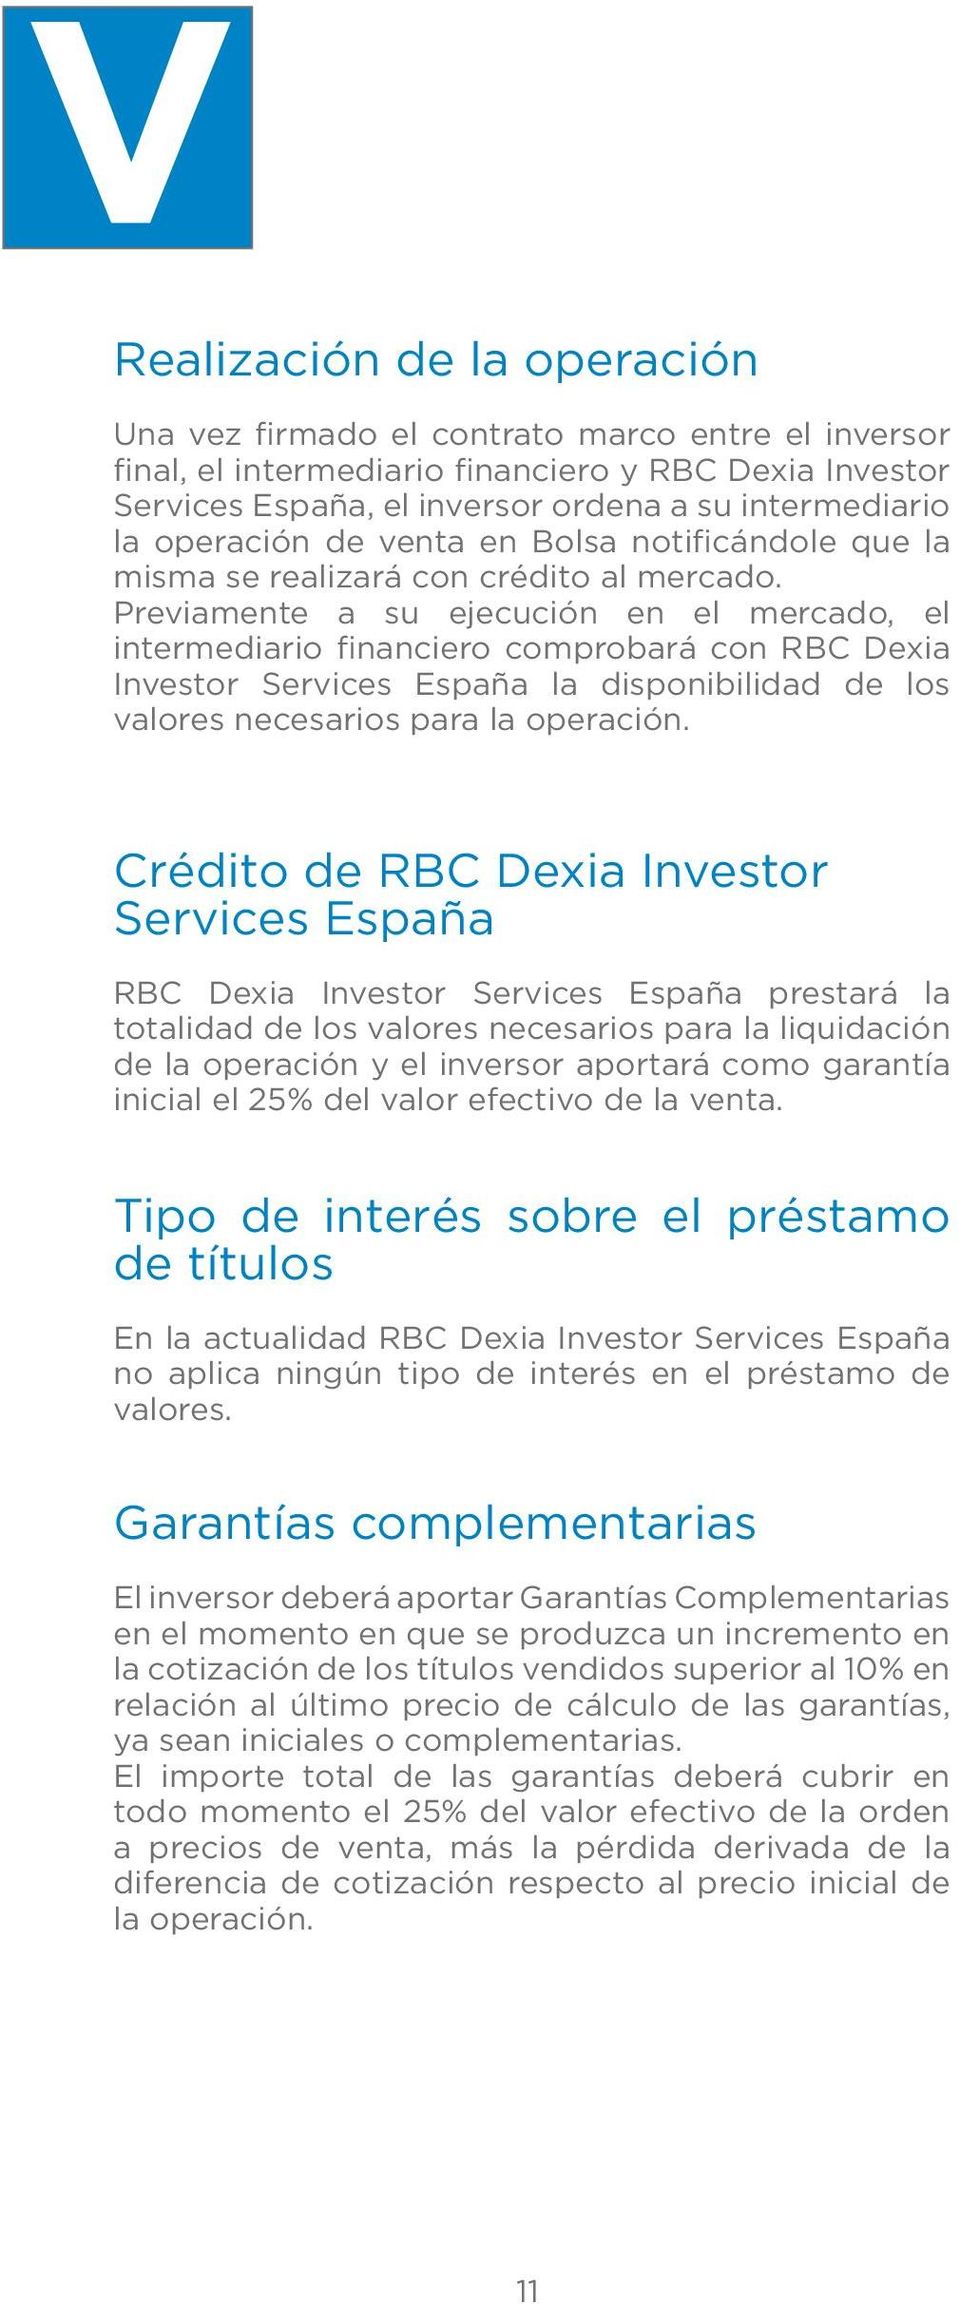 Previamente a su ejecución en el mercado, el intermediario financiero comprobará con RBC Dexia Investor Services España la disponibilidad de los valores necesarios para la operación.